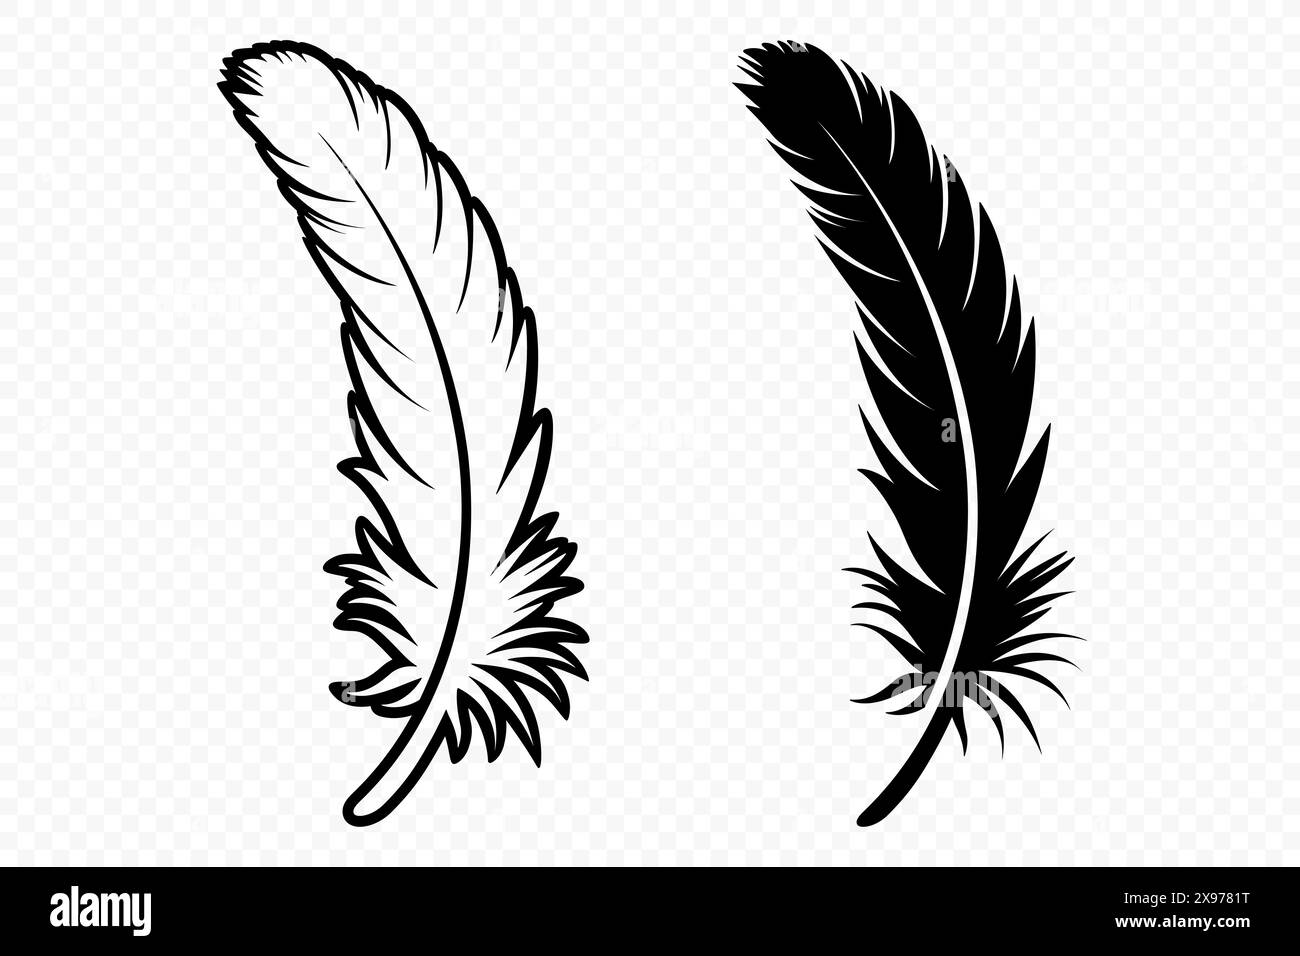 Vector Schwarz und weiß Logosymbole mit flauschigen Federn. Silhouette Feather Set Closeup Isoliert. Designvorlage für Flamingo, Engel, Vogelfeder. Leichtigkeit Stock Vektor